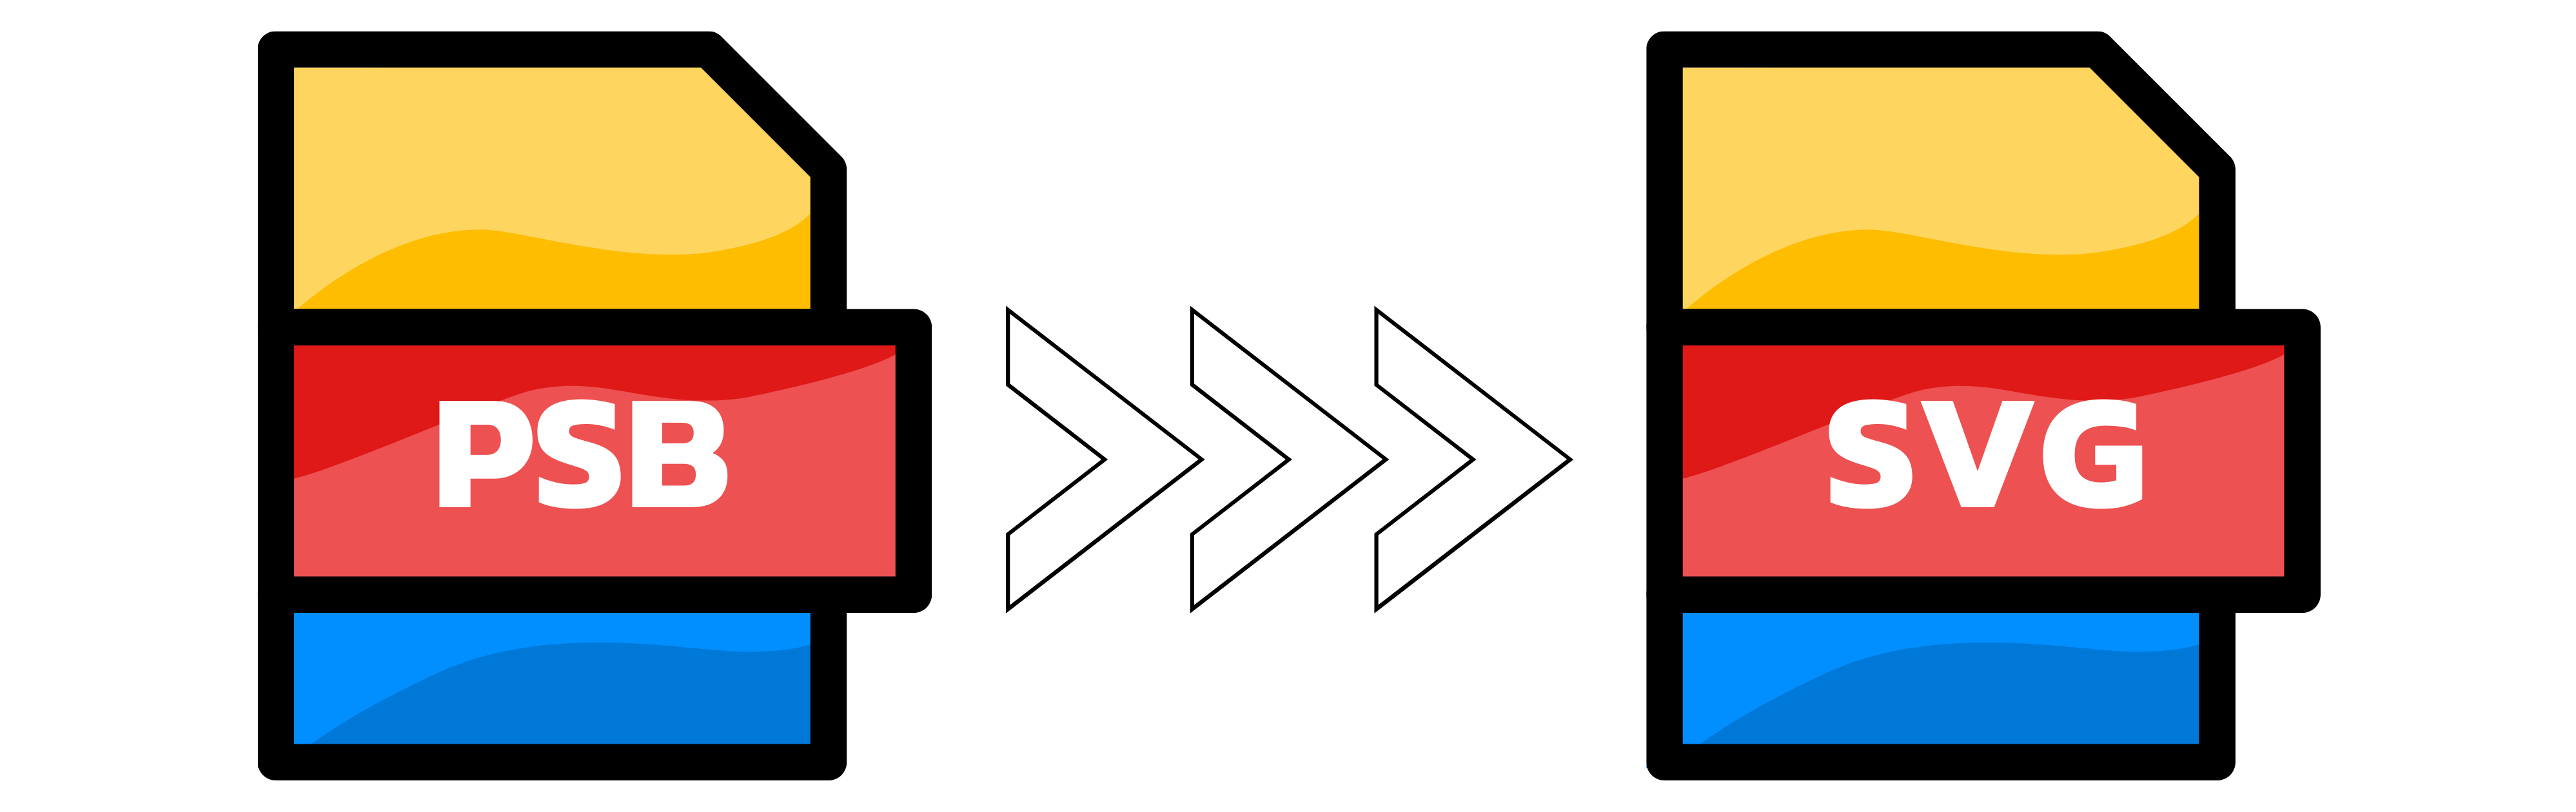 Ilustrācija: PSB pārveidošana SVG formātā